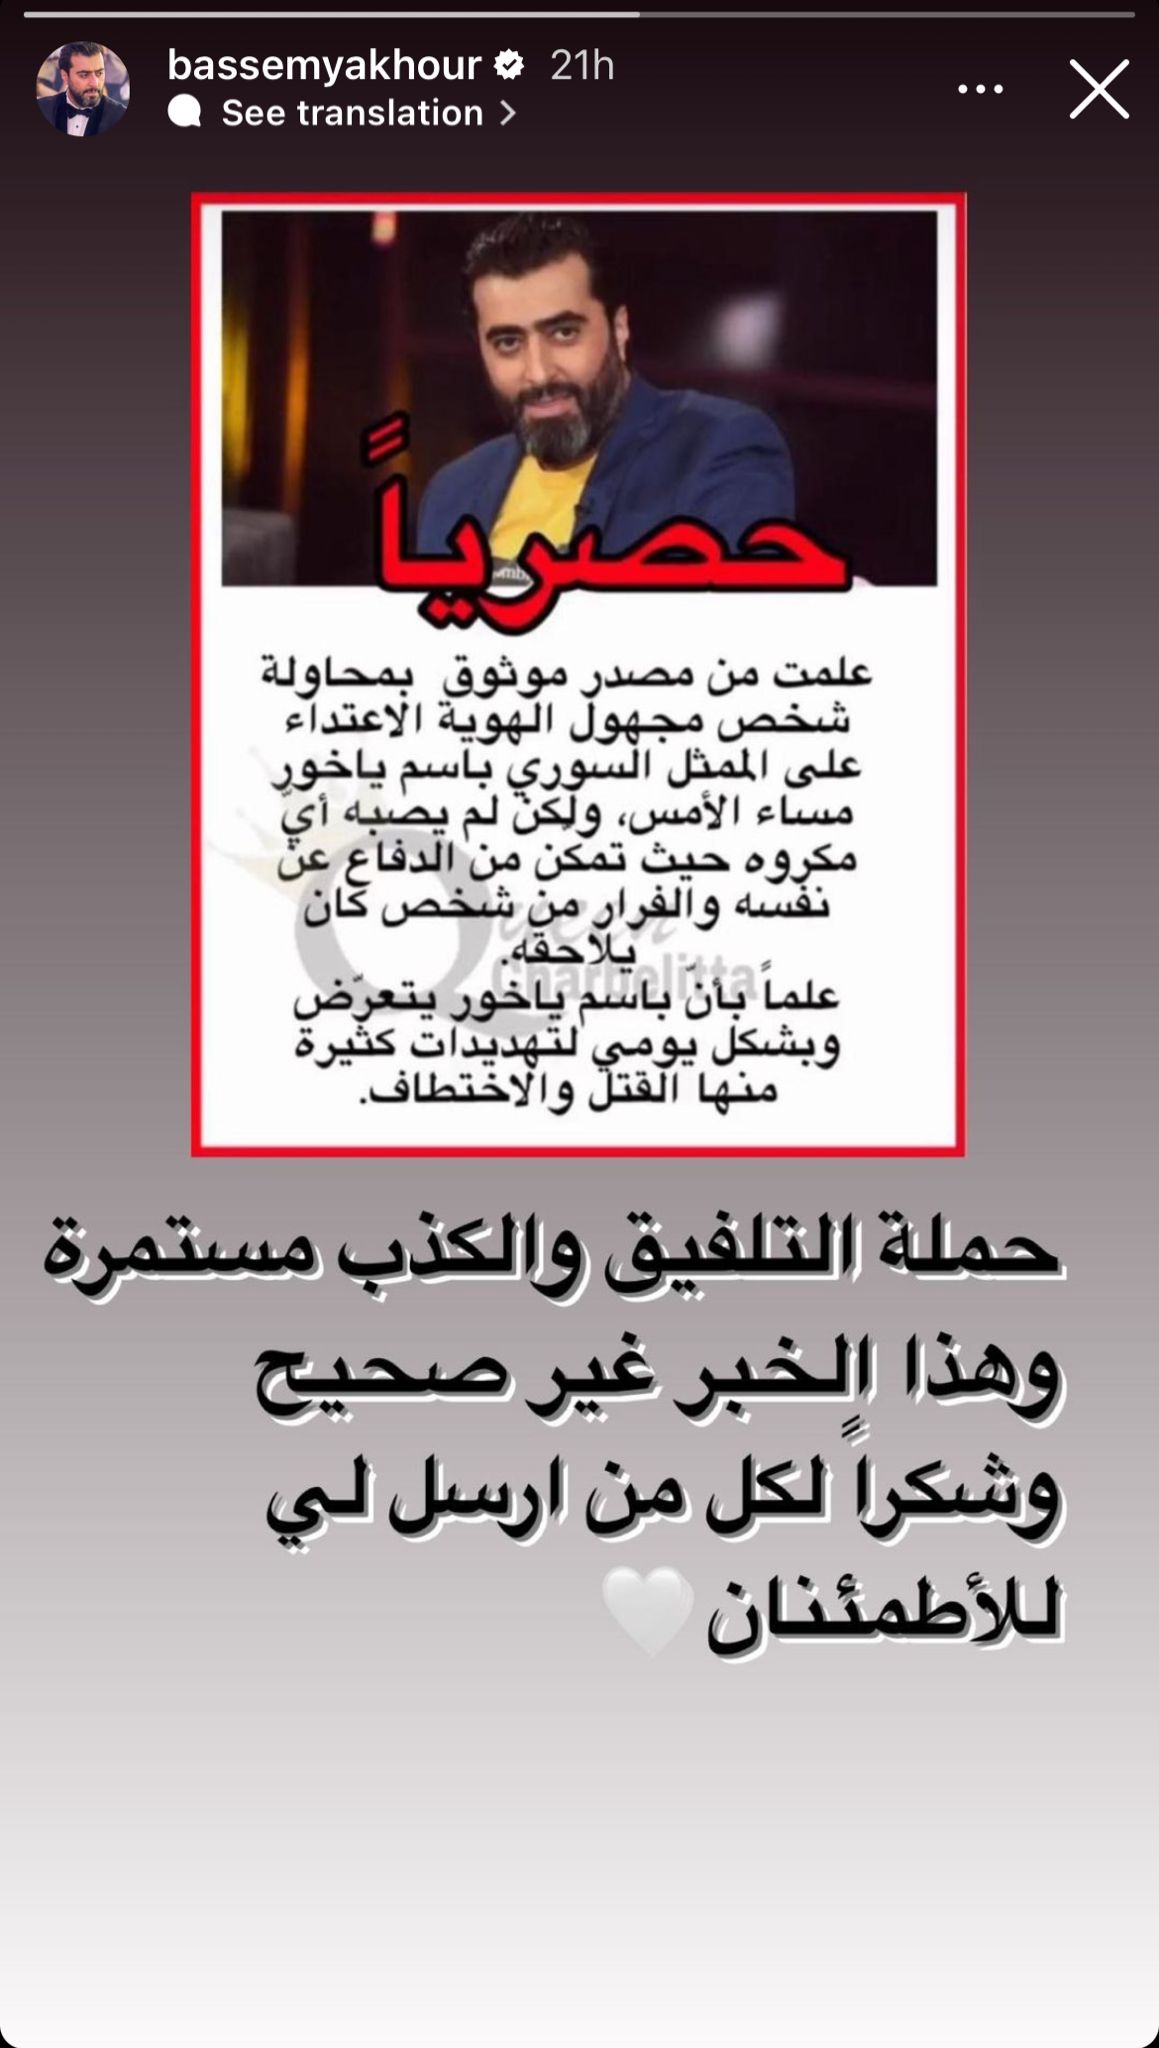 الستوري التي نشرها الفنان باسم ياخور عبر انستغرام للرد على شائعات تهديده بالقتل